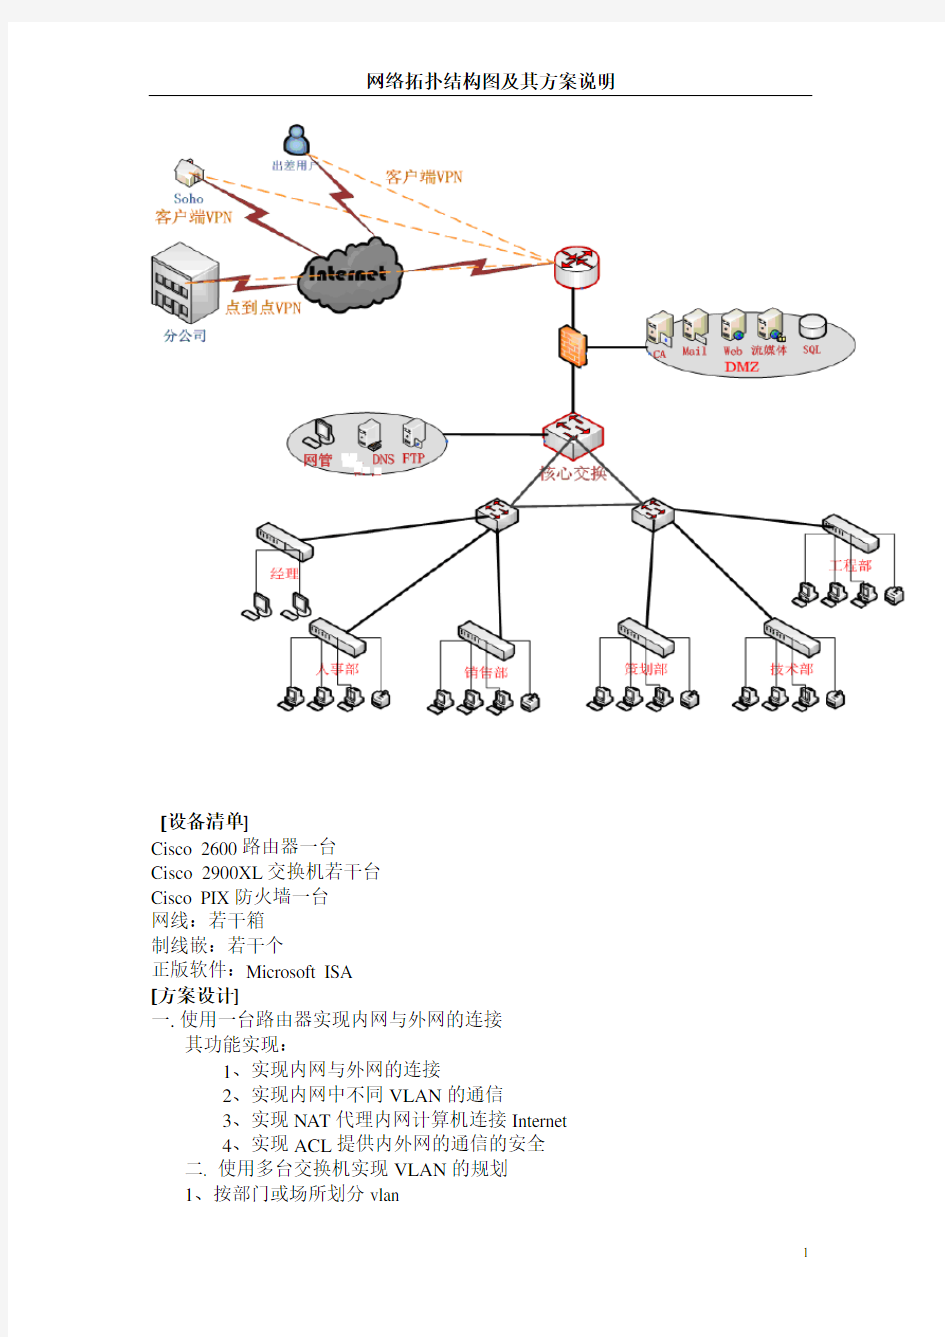 网络拓扑结构图设计及其方案说明